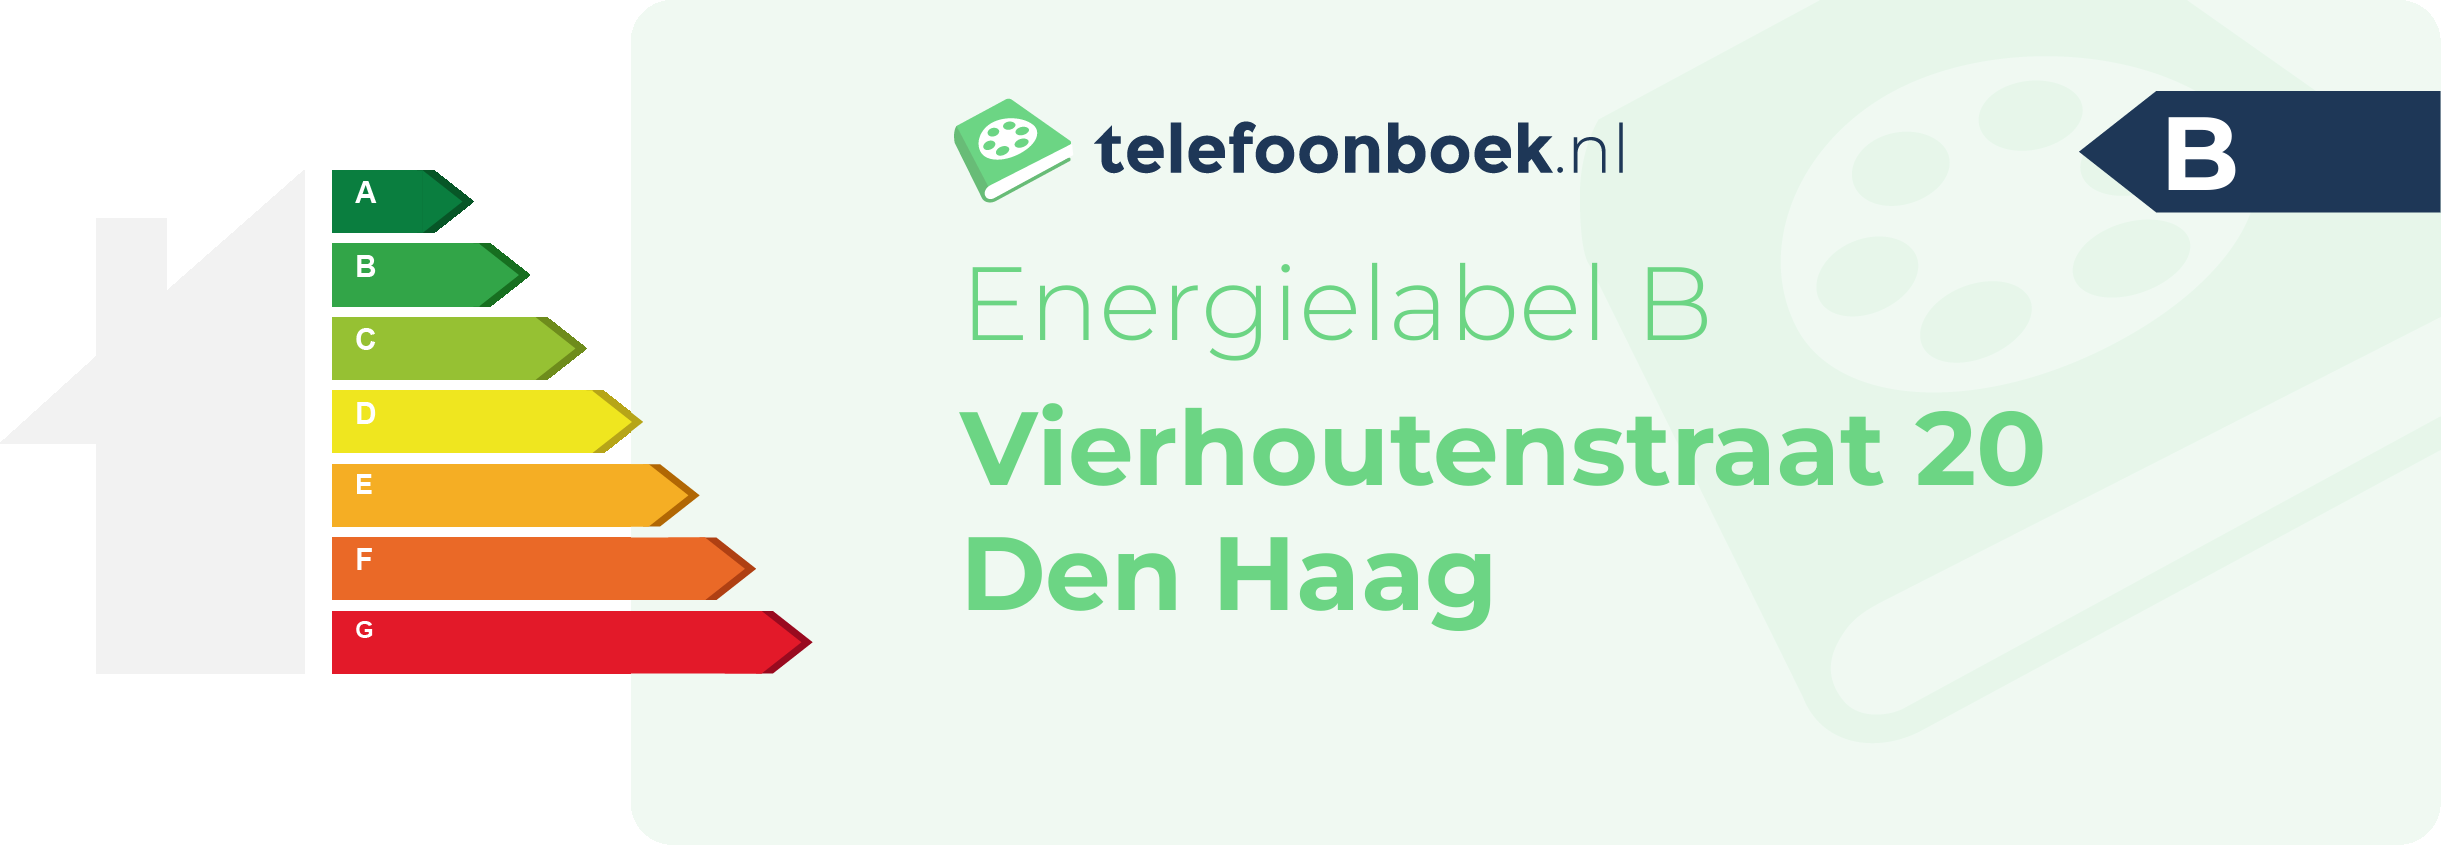 Energielabel Vierhoutenstraat 20 Den Haag